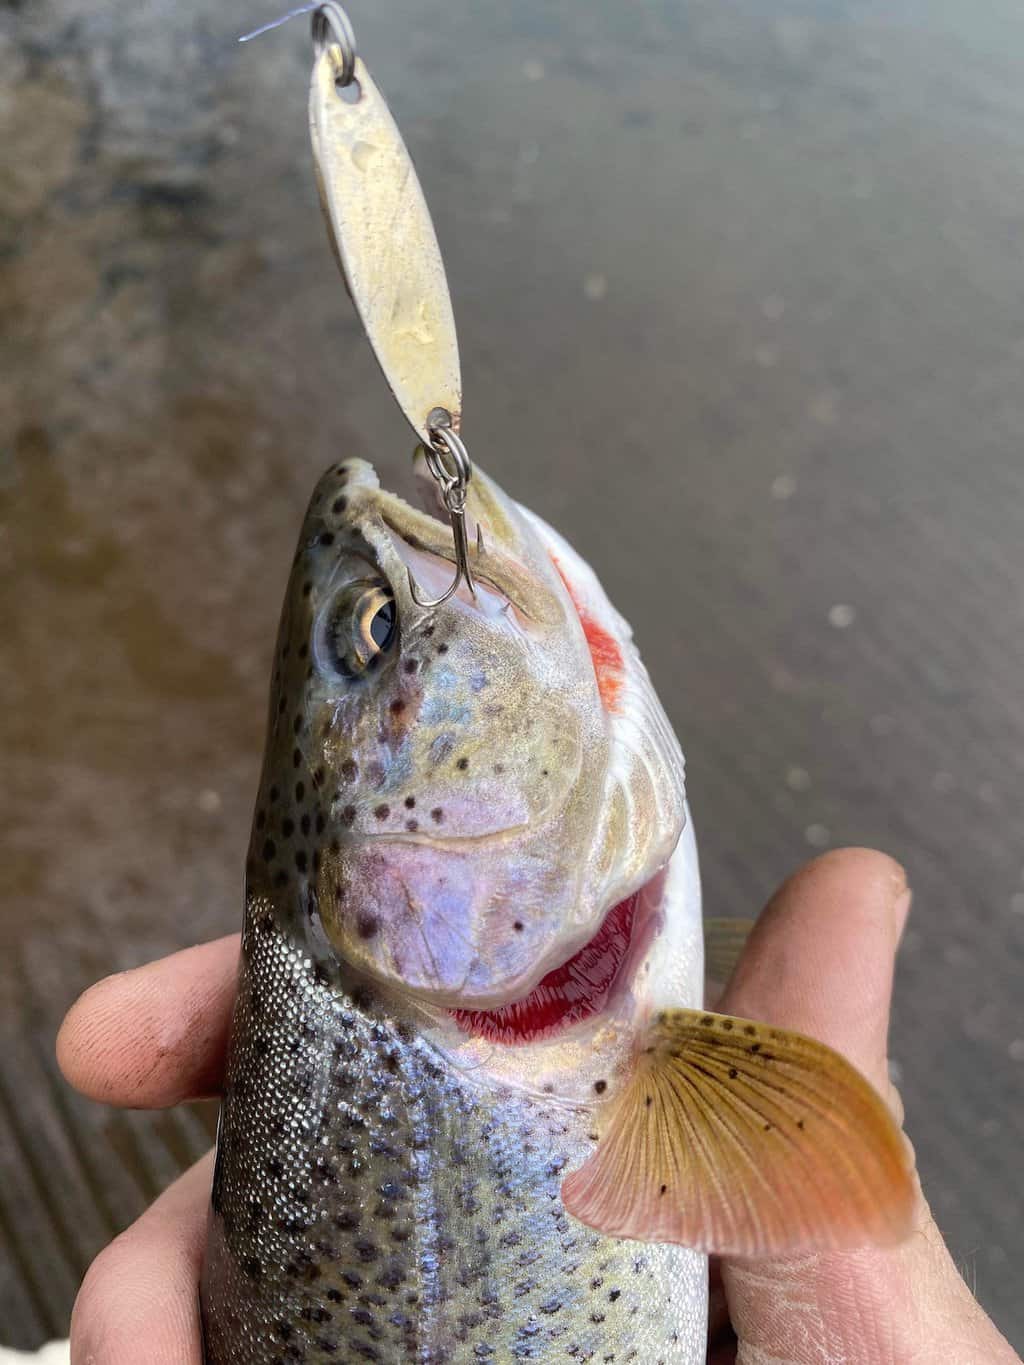 trout power bait techniques - Google Search  Trout fishing tips, Trout  fishing, Trout fishing lures